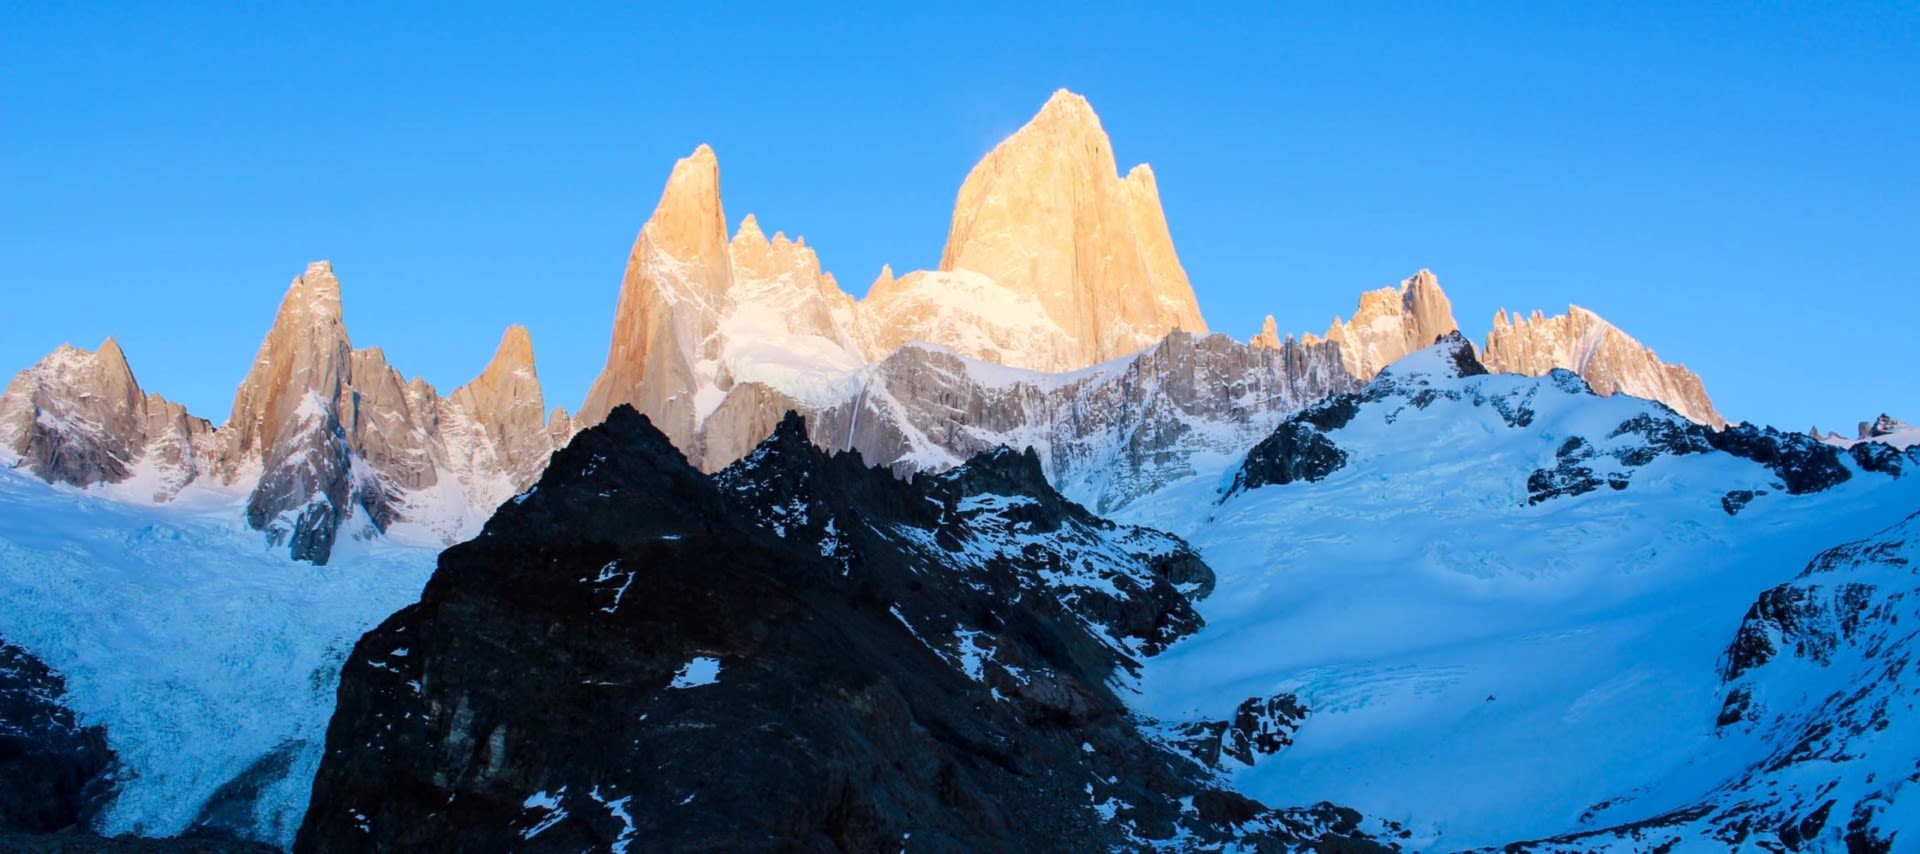 Peaks of Patagonia mountain range